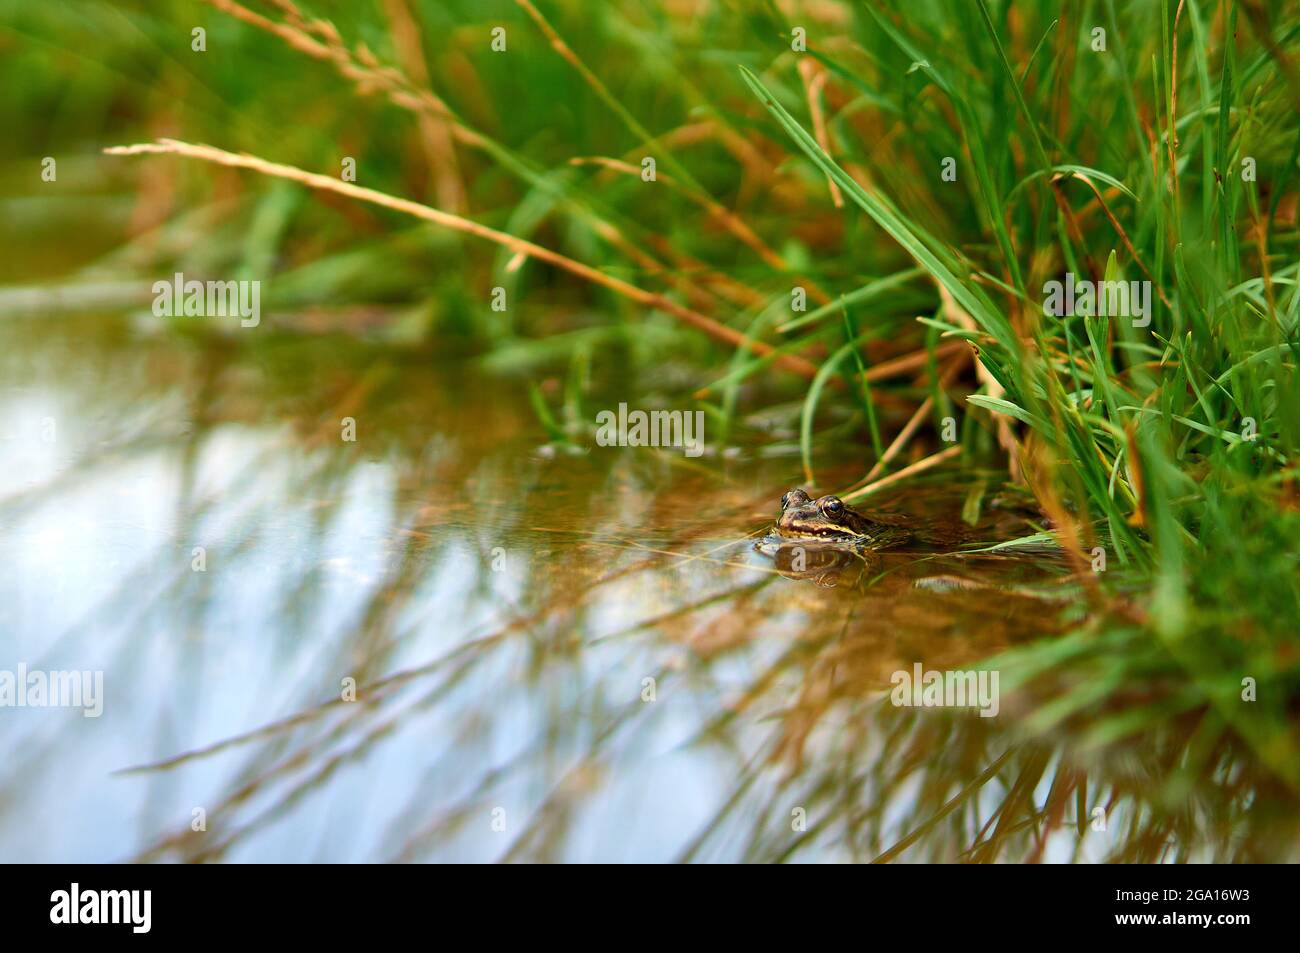 Frosch, der in einem Teich auf einem Hintergrund aus Gras sitzt Stockfoto